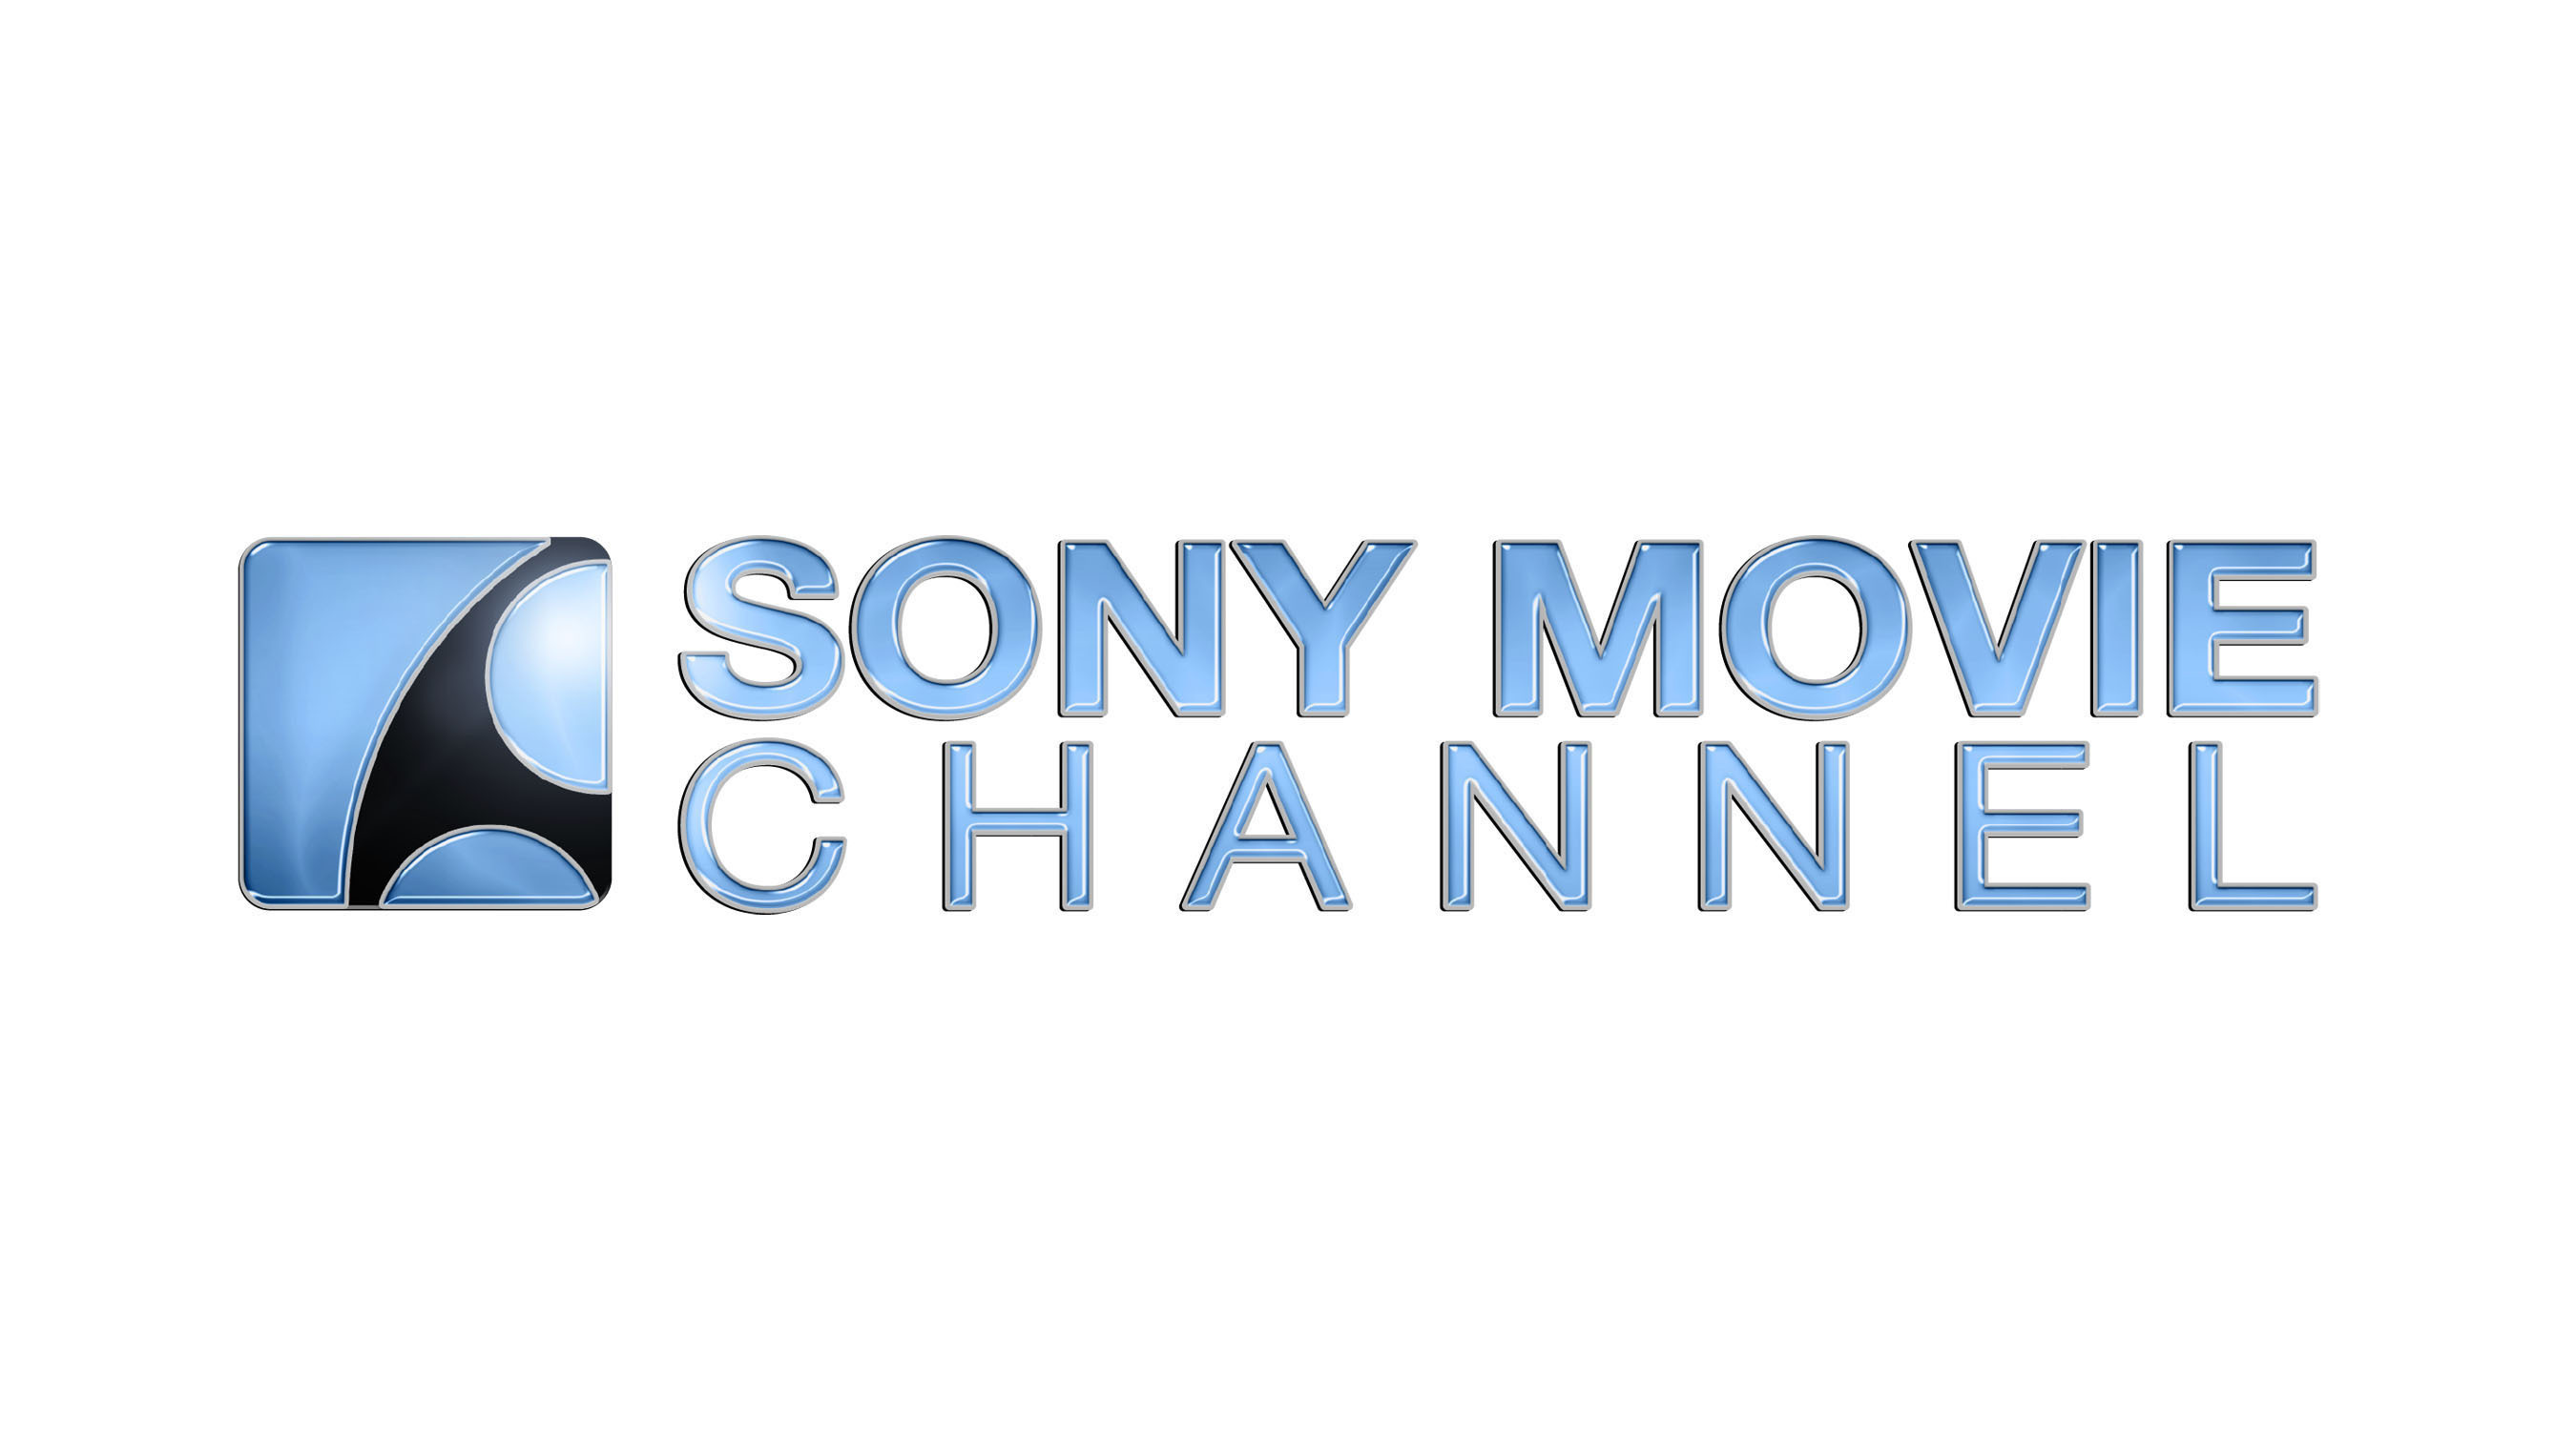 Sony Movie Channel logo. (PRNewsFoto/Sony Movie Channel) (PRNewsFoto/)